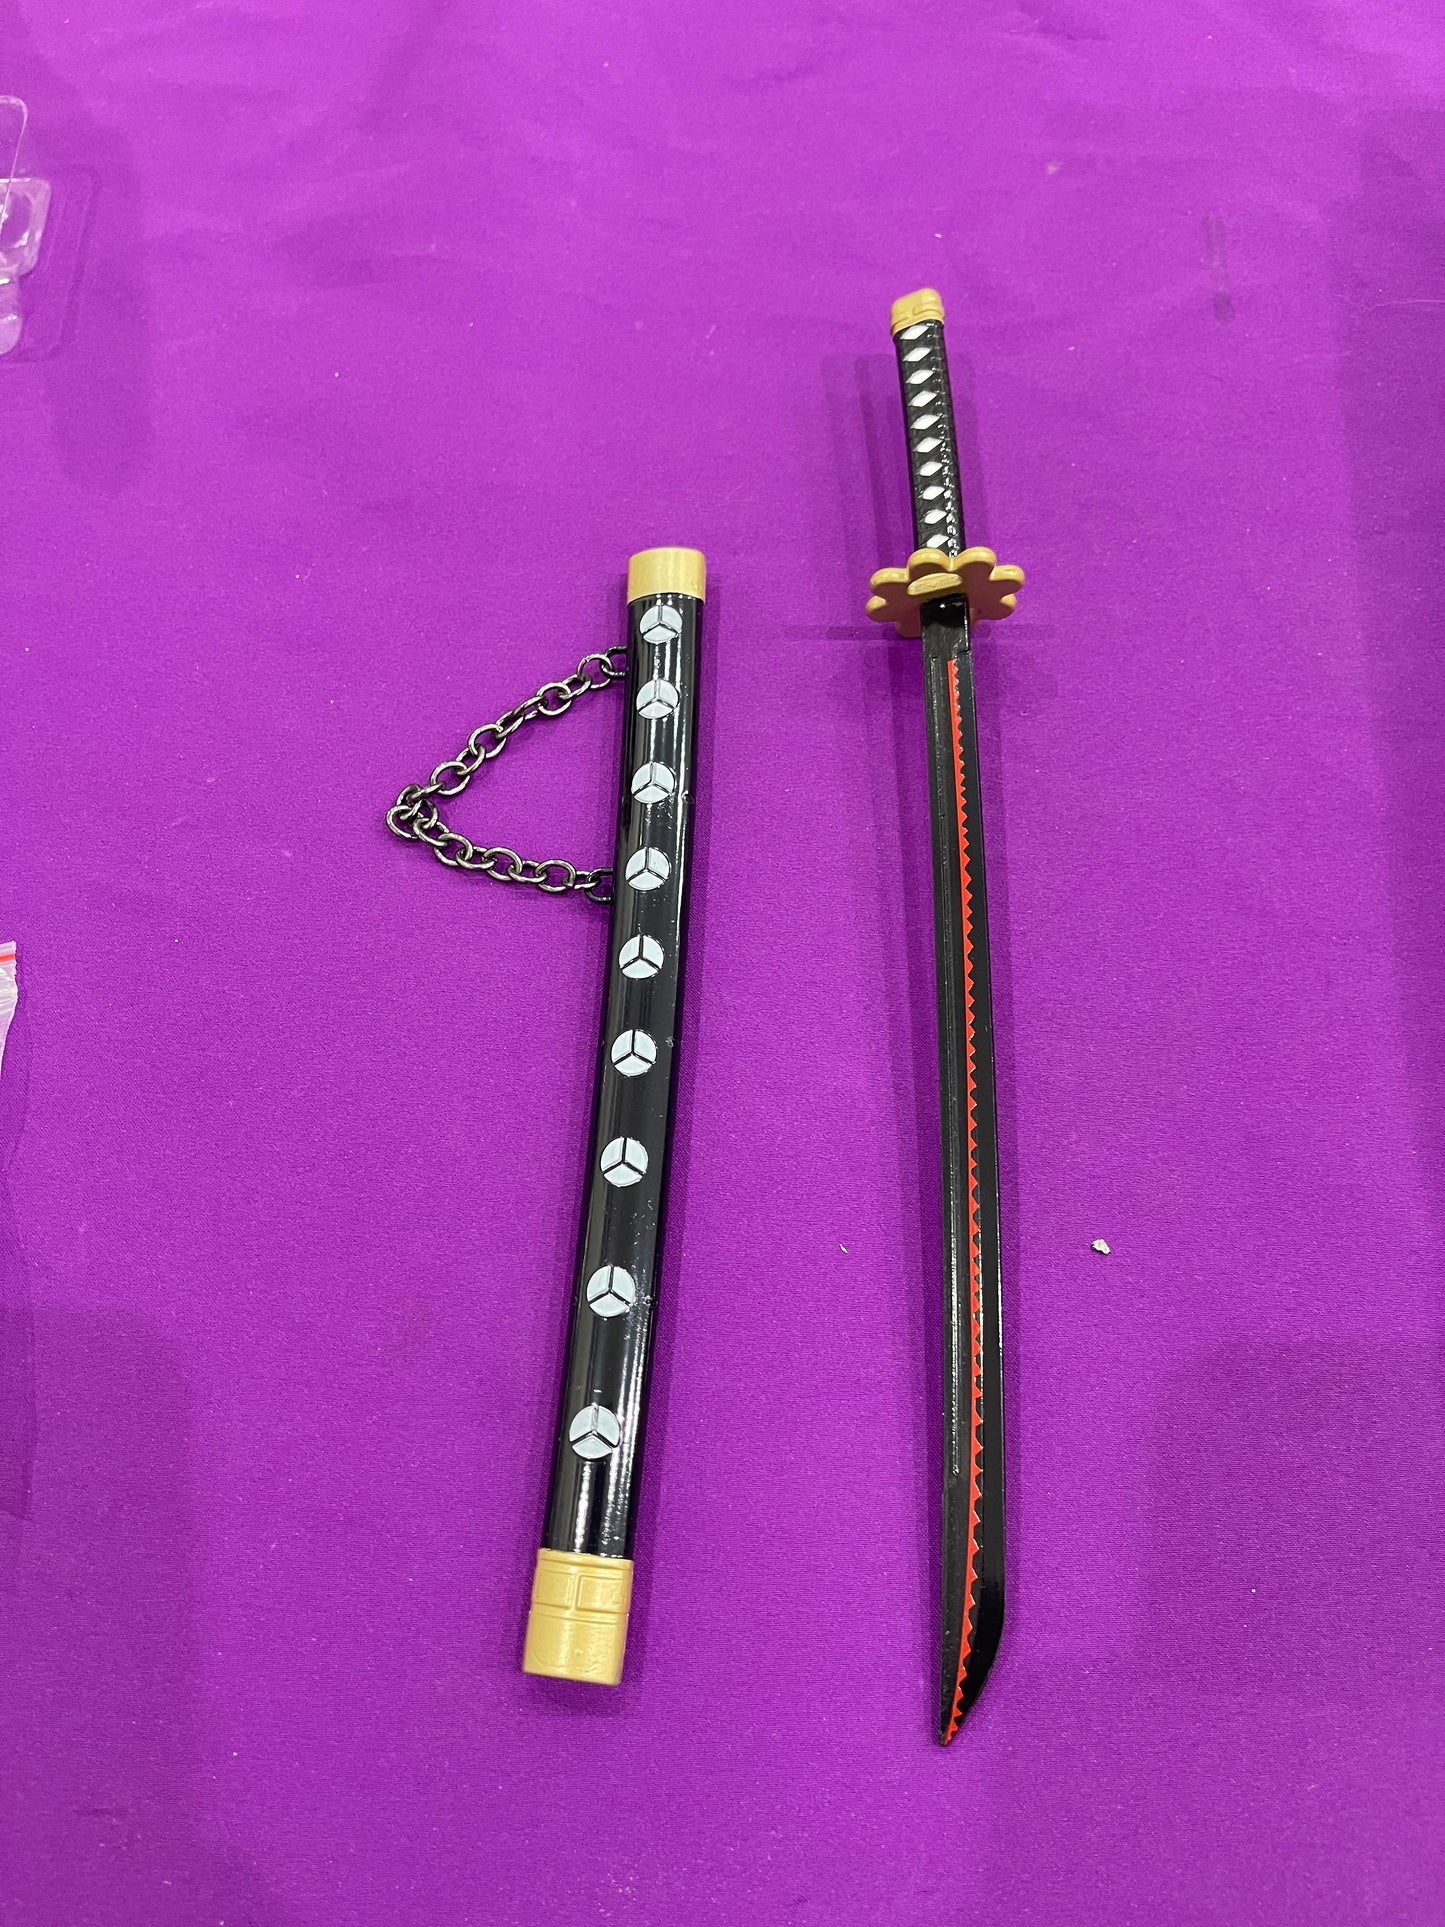 Zoro shusui sword keychain